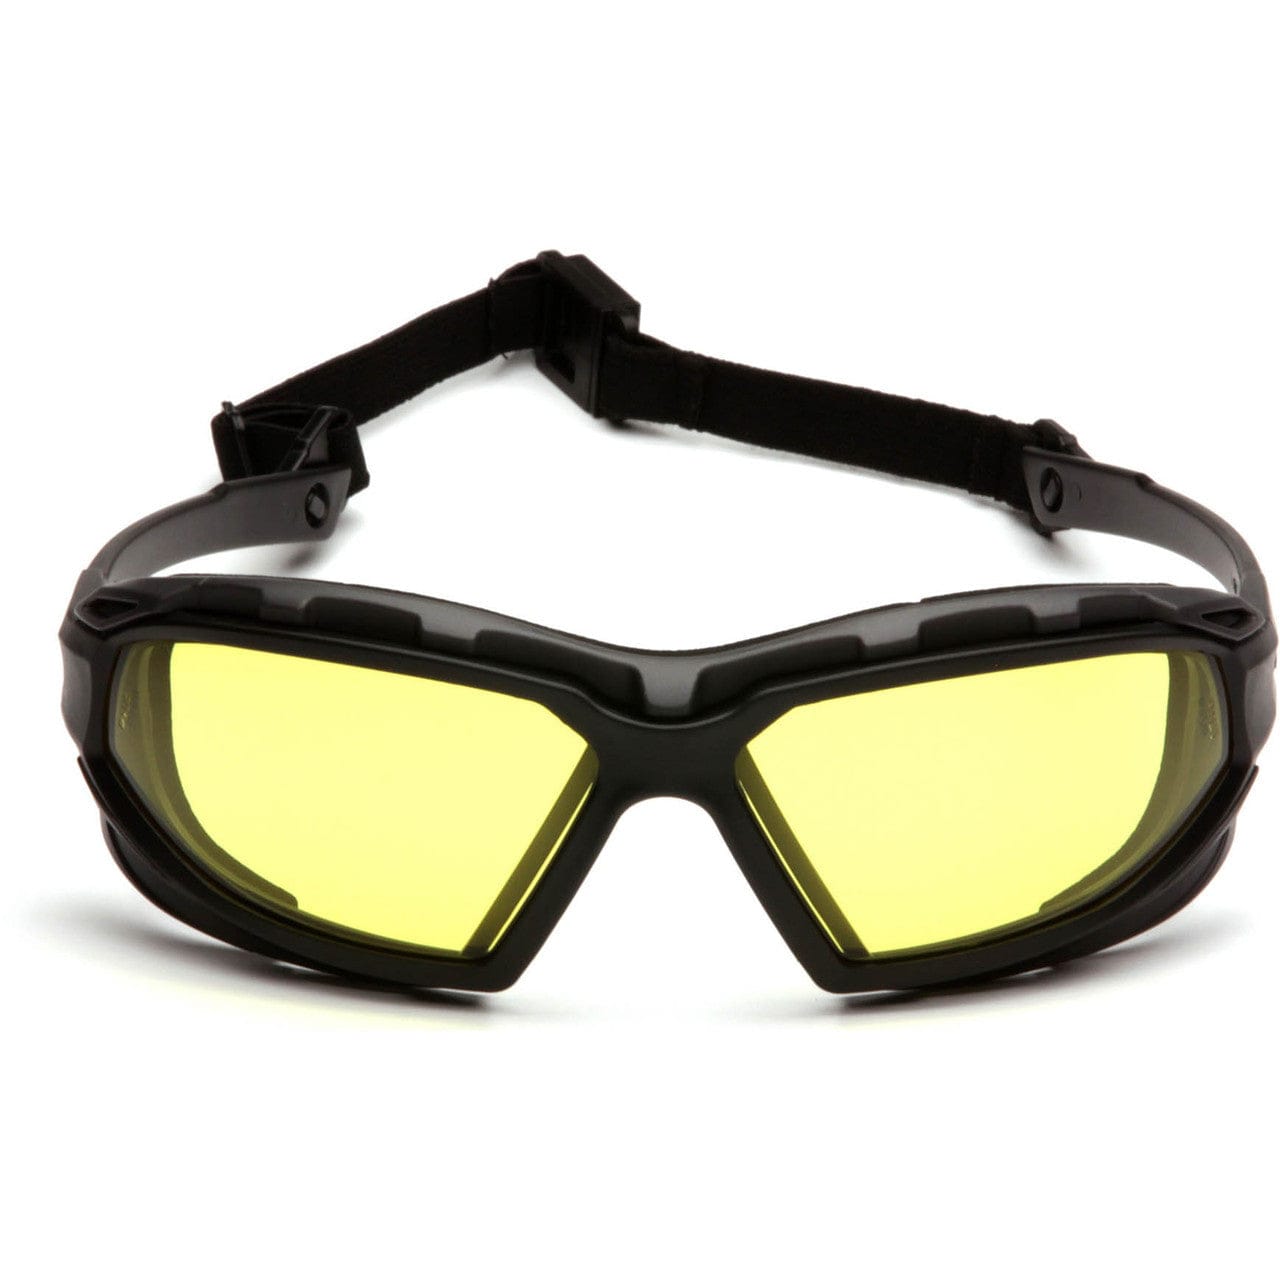 Pyramex Highlander Plus Safety Glasses Black Foam-Lined Frame Amber Anti-Fog Lens SBG5030DT Front